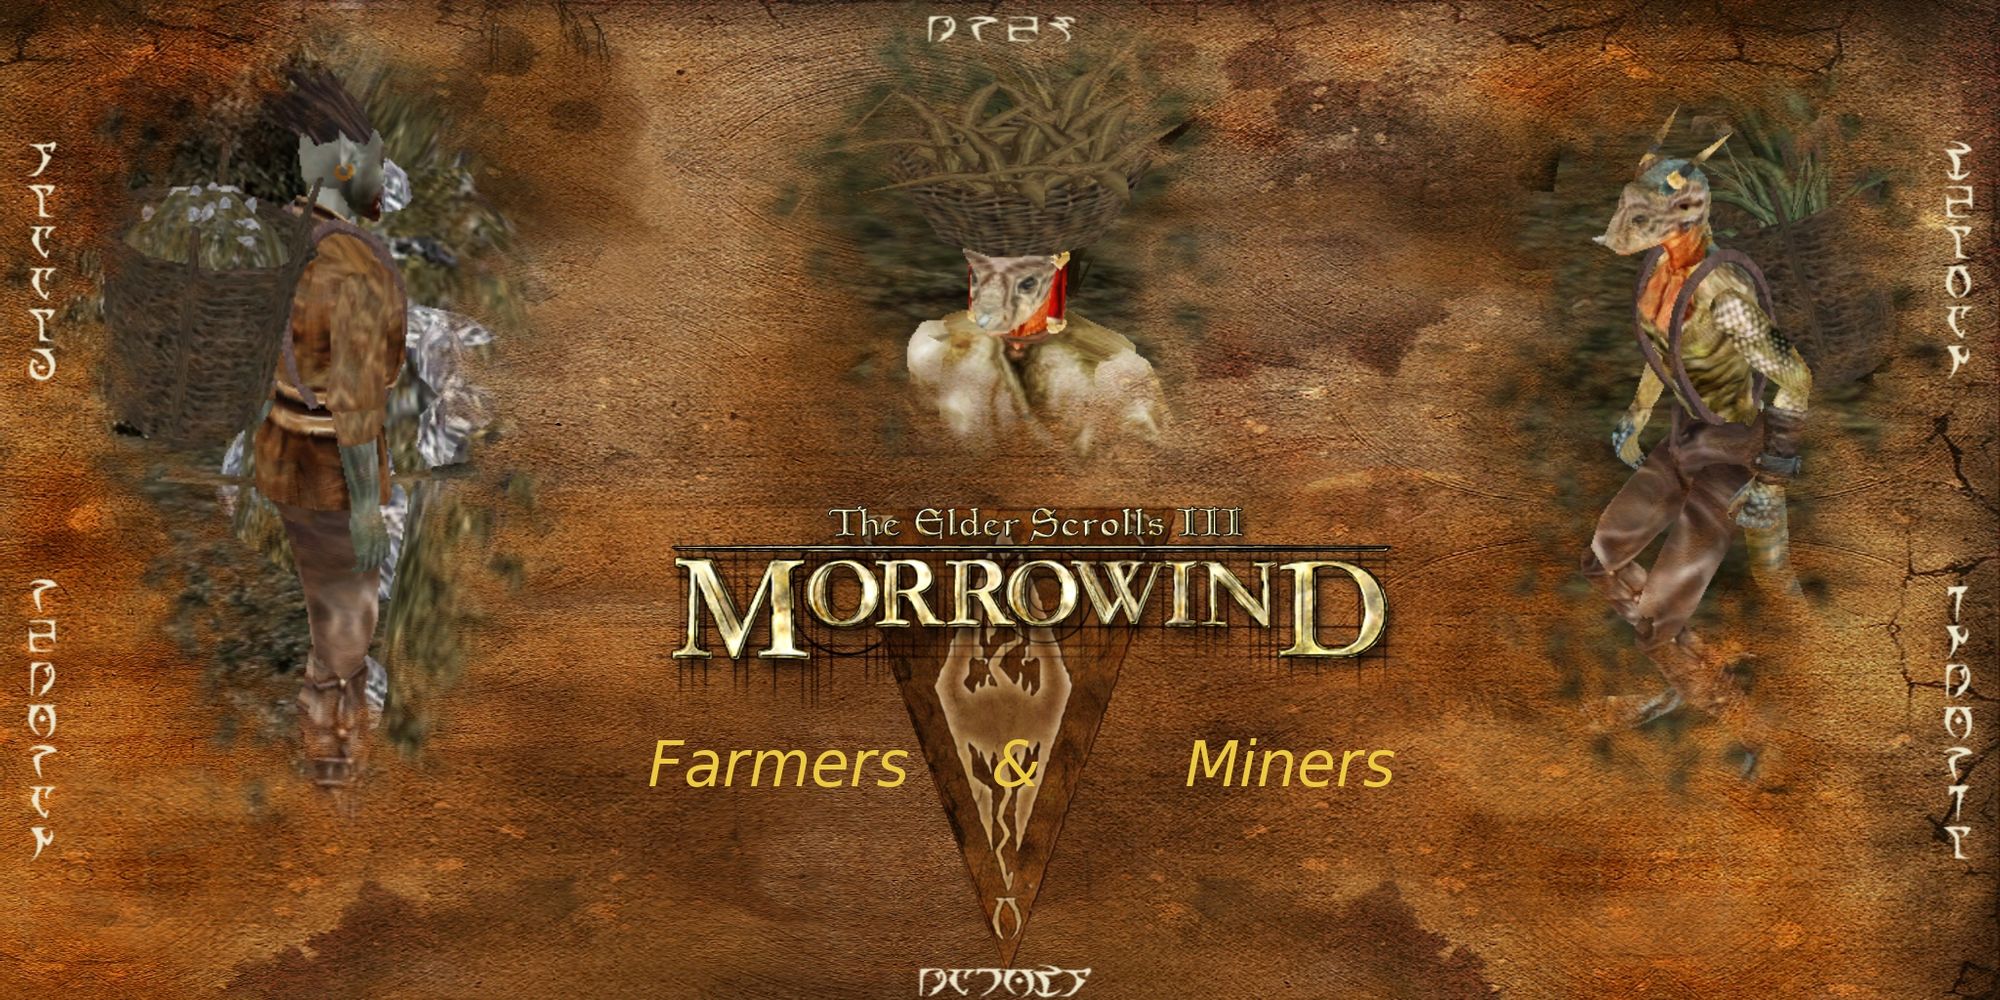 Farmers and Miners: A Morrowind Mod